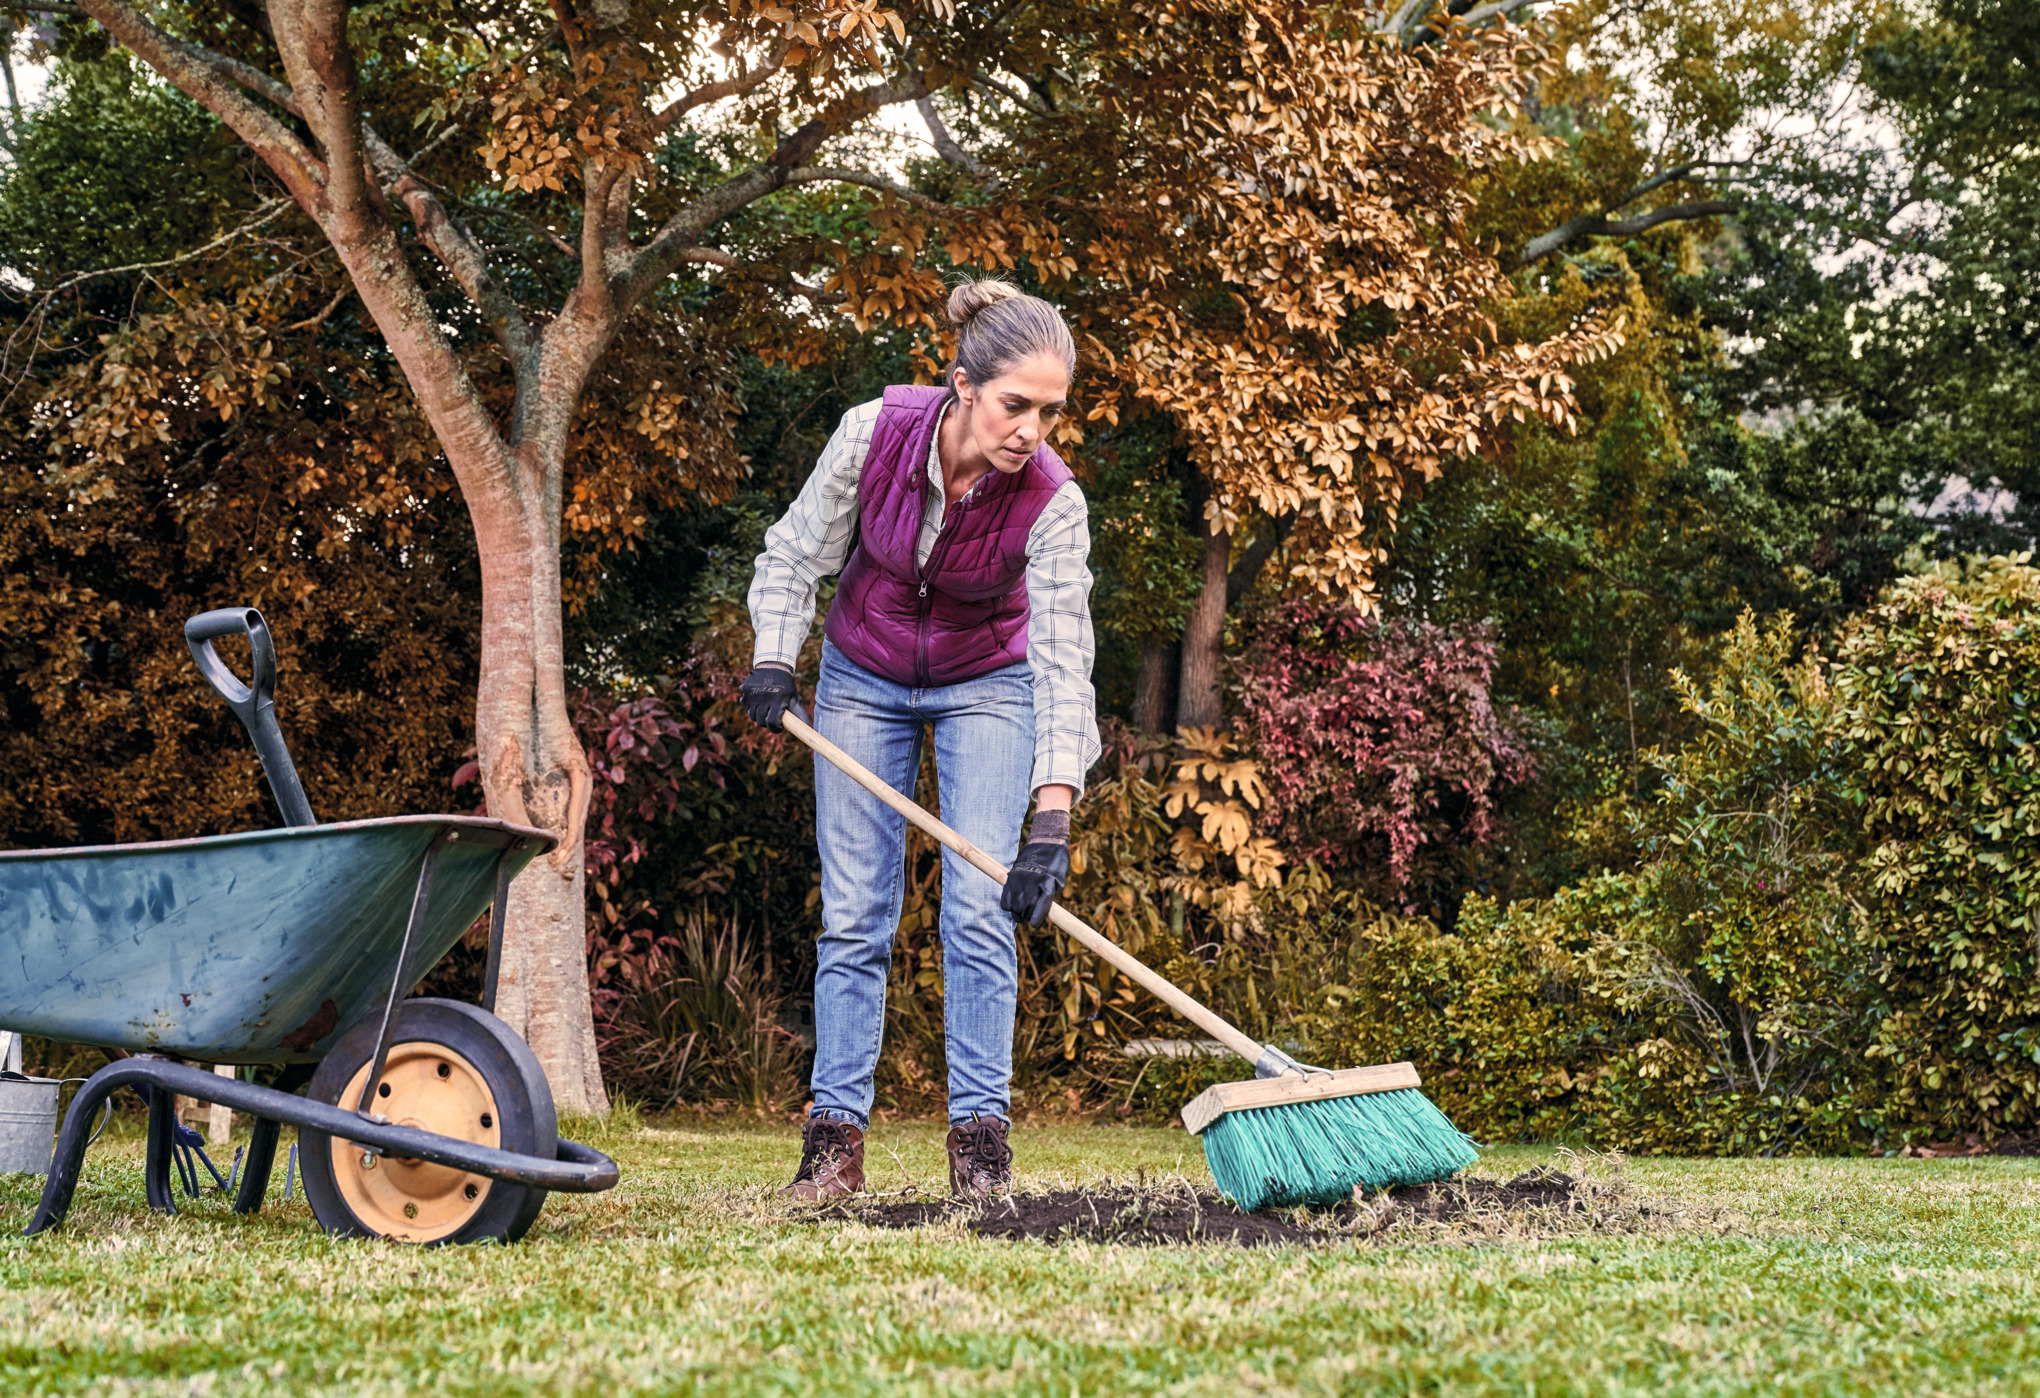 A woman sweeps leaves in a garden beside a metal wheelbarrow.